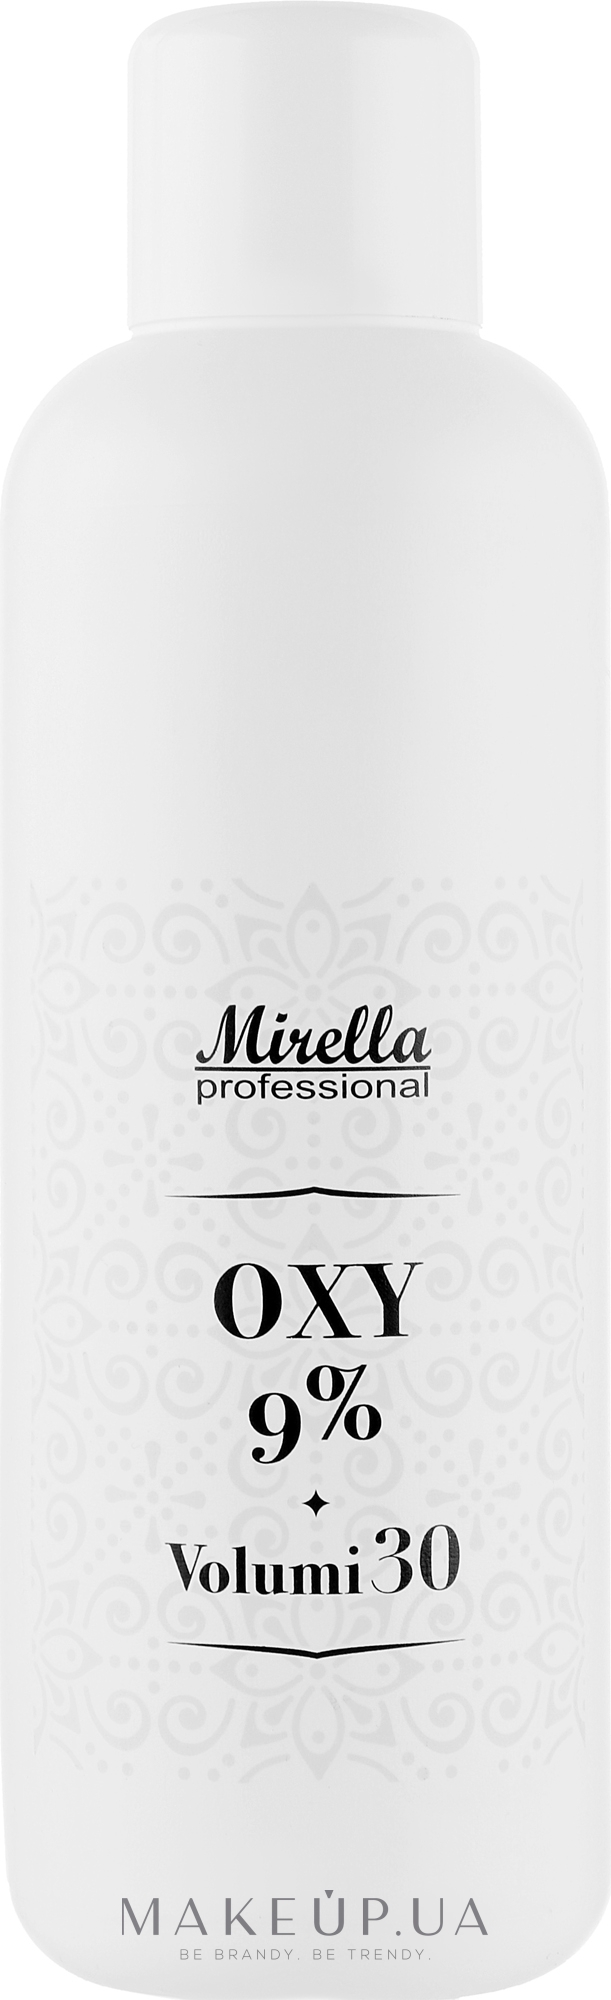 Универсальный окислитель 9% - Mirella Oxy Vol. 30 — фото 1000ml